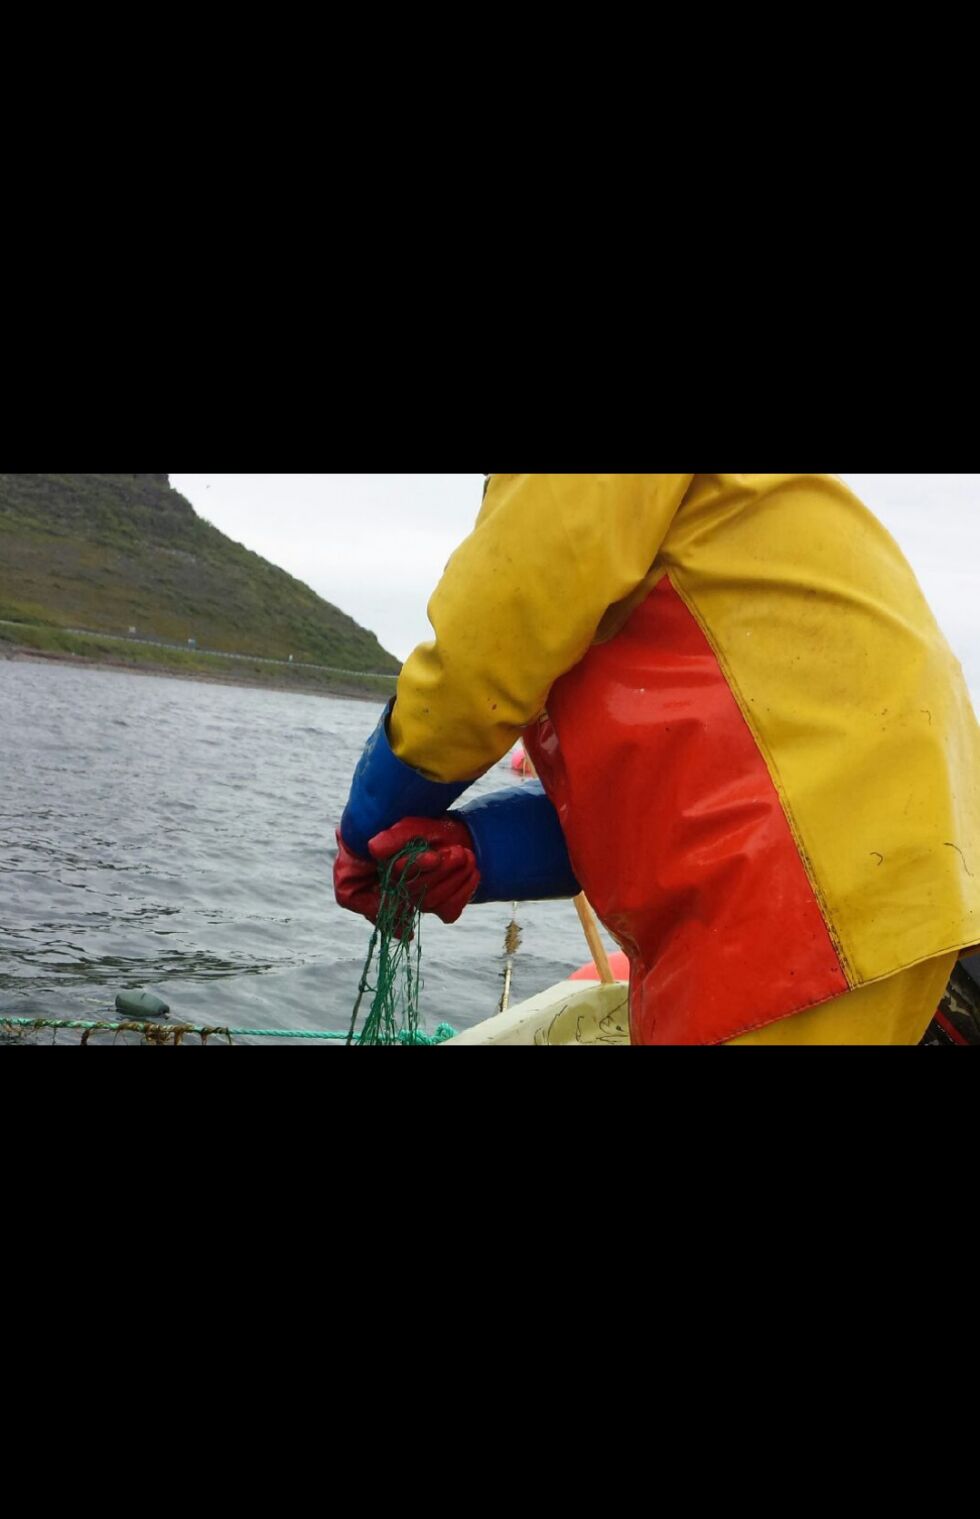 Norges Fiskarlag mener sjølaksefiskerne har tatt en altfor stor belastning for at fisket etter laks skal strammes inn. Fiskarlaget ber blant annet om utvidet fisketid for denne gruppen.
 Foto: Torbjørn Ittelin